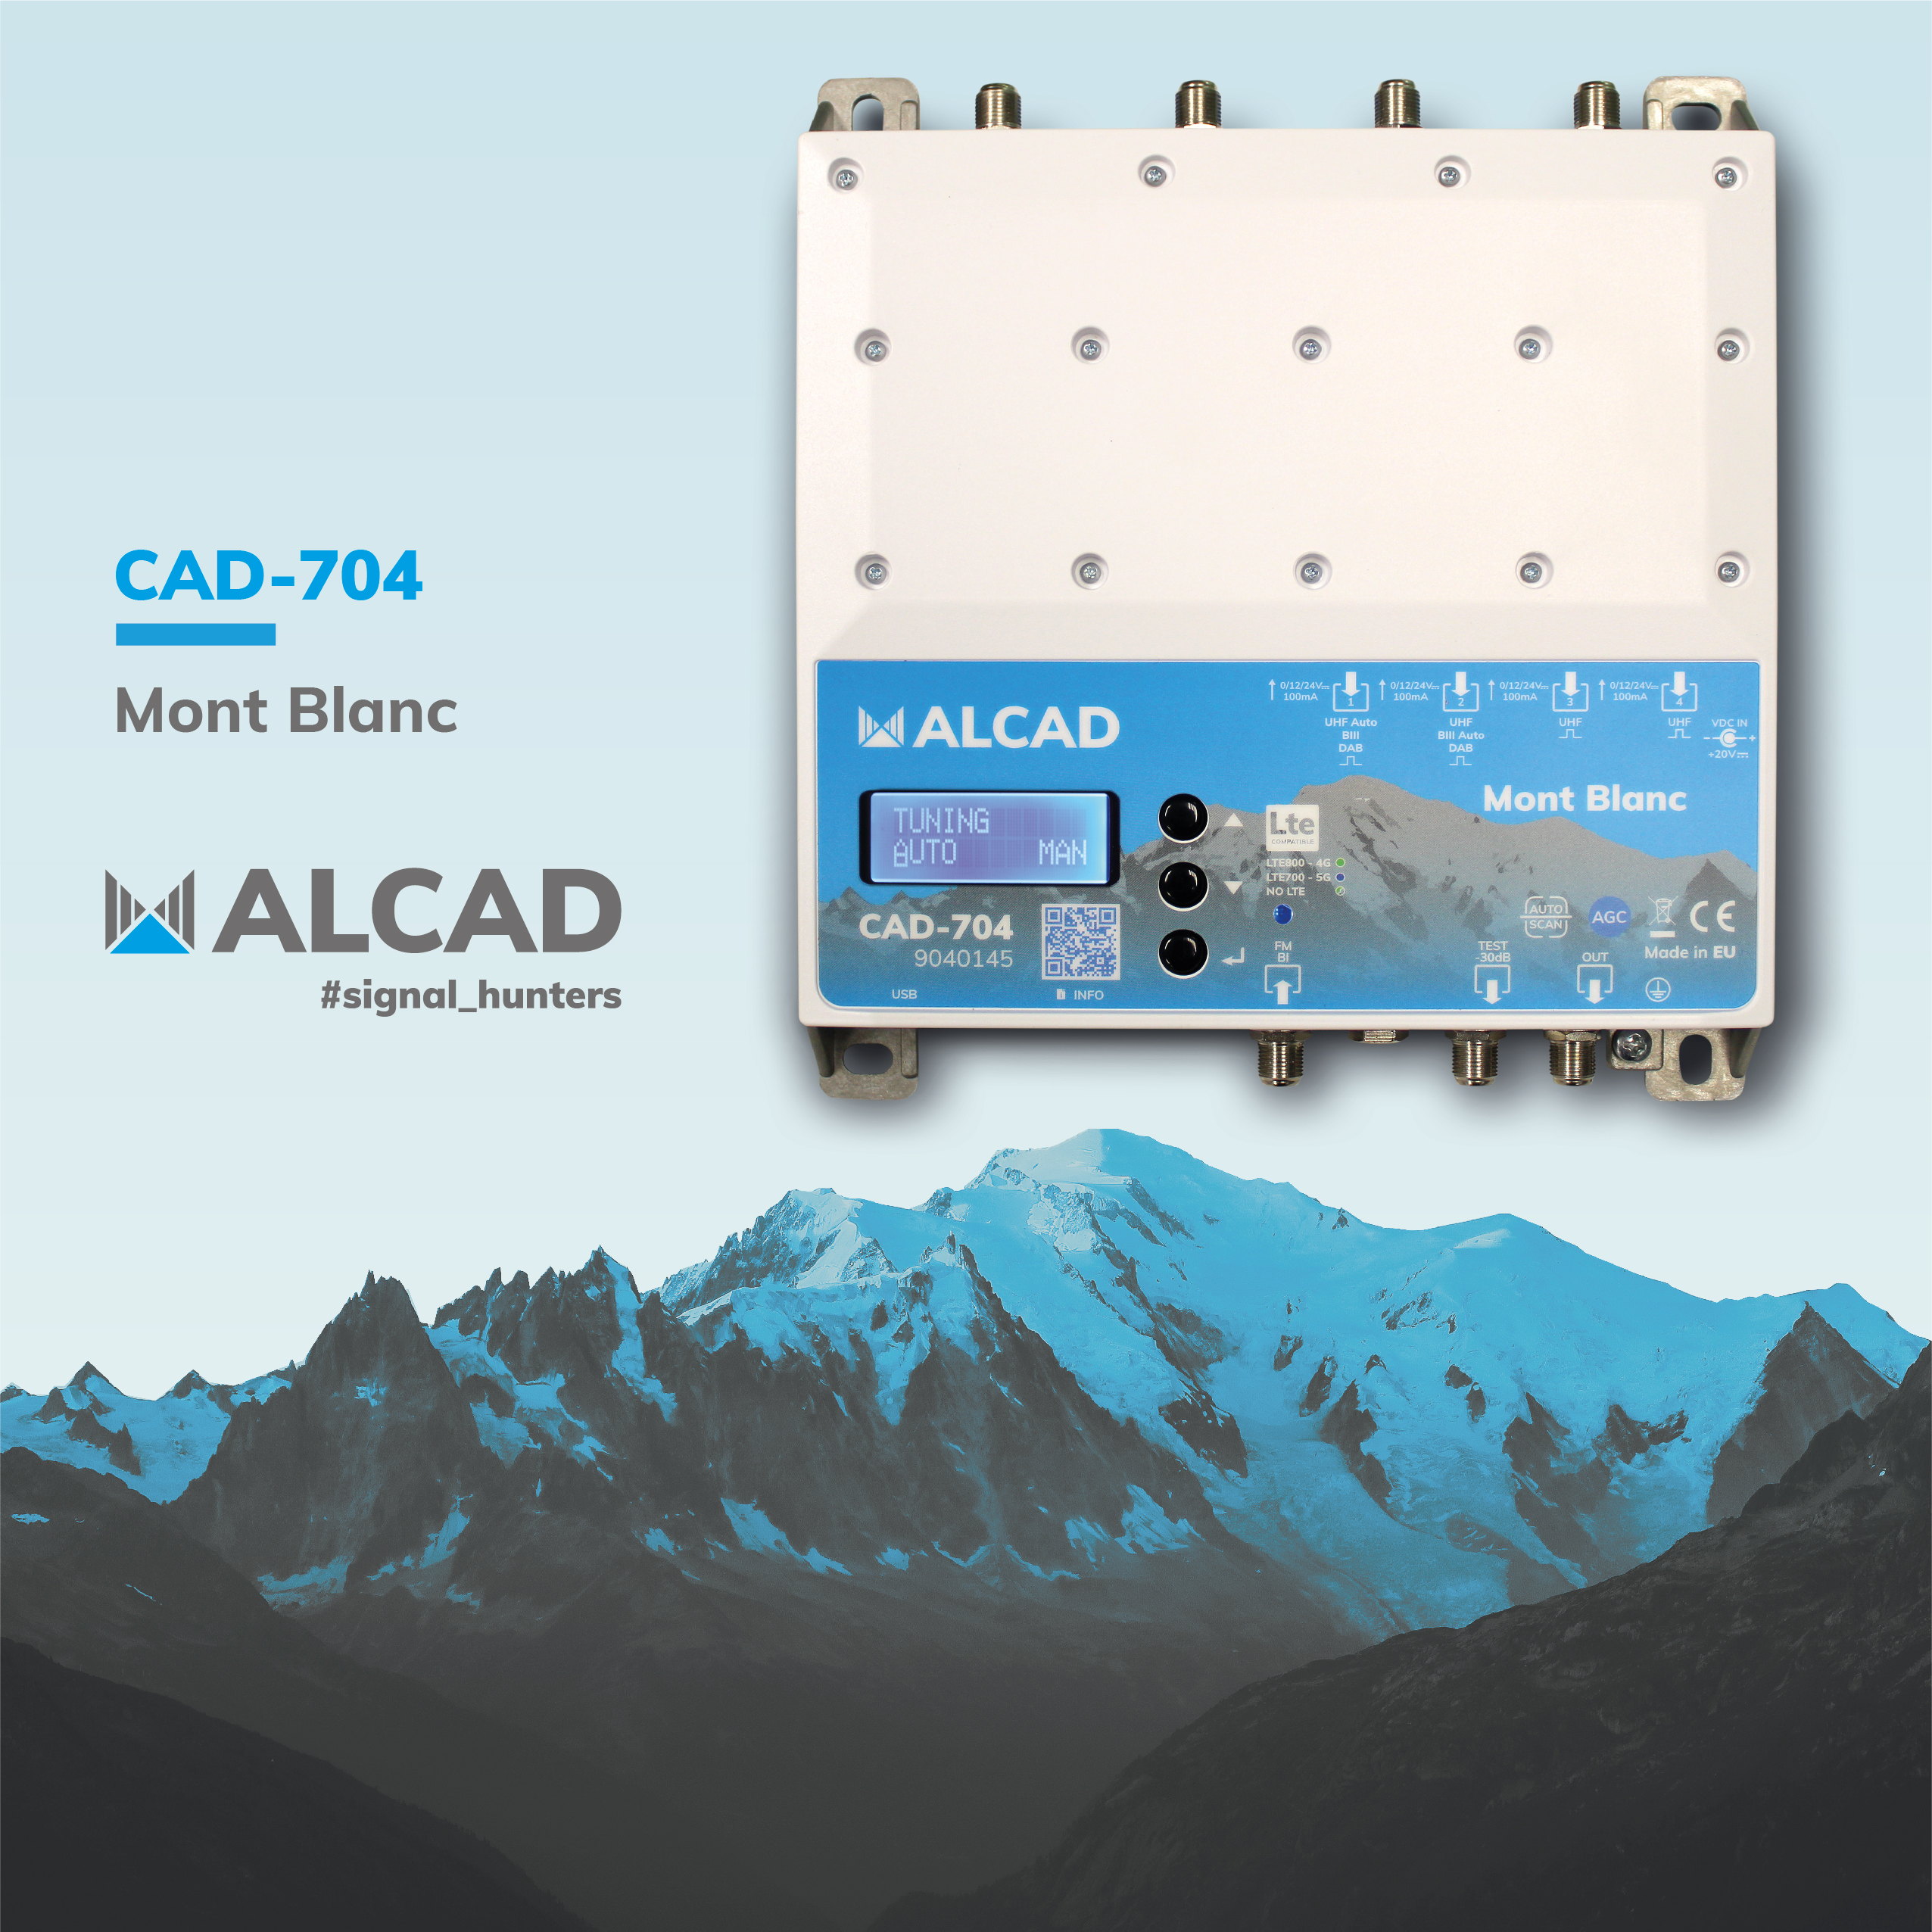 New Mont Blanc amplifier: It’s programmable. It’s digital. It’s by ALCAD